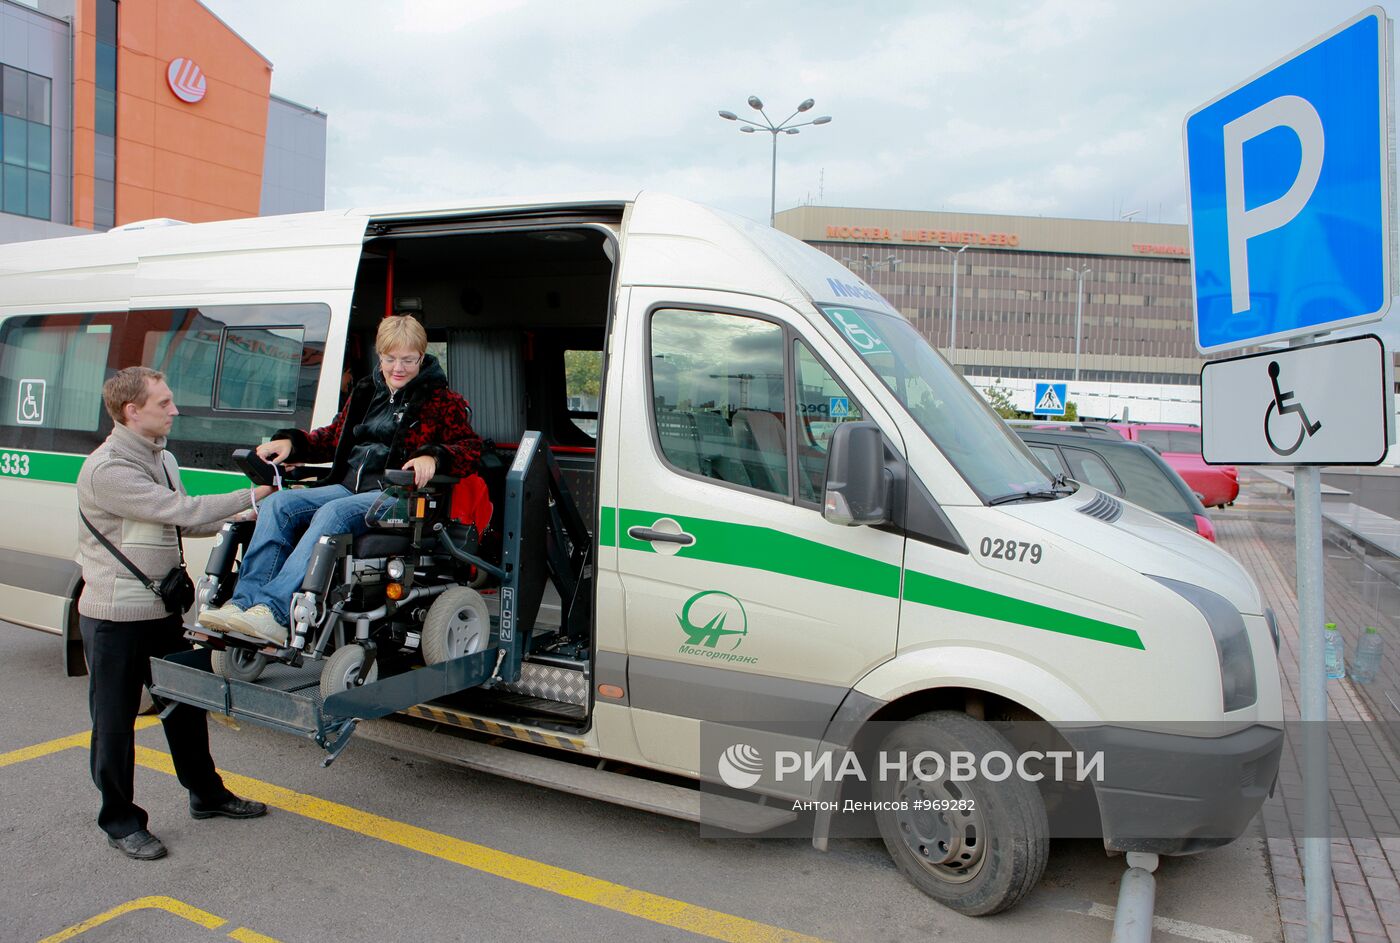 Перевозка пассажиров инвалидов. Транспорт для инвалидов. Транспорт для маломобильных людей. Автобус для инвалидов. Маломобильные пассажиры.